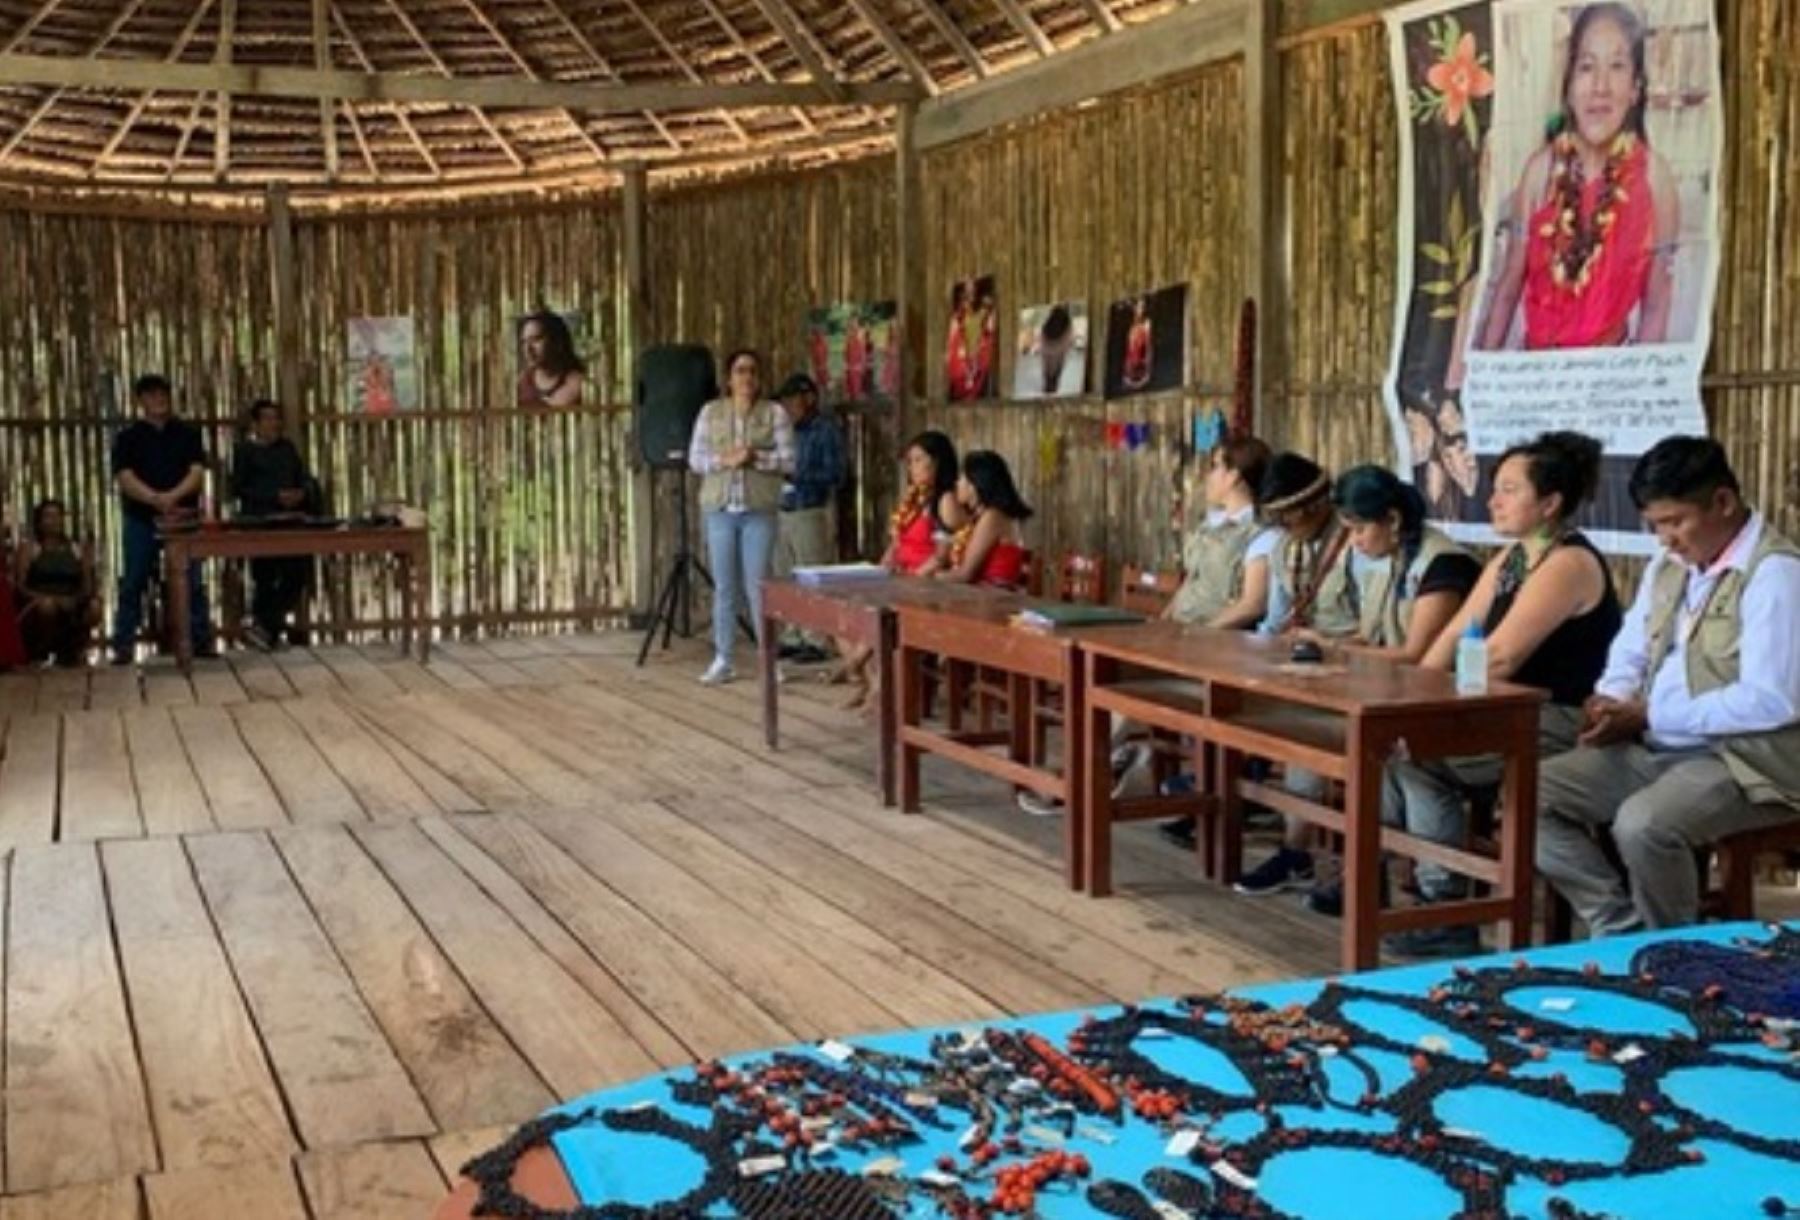 Las mujeres nativas de la comunidad de Shimpiyacu, ubicada en el distrito y provincia de Moyobamba, en la región San Martín, obtienen ingresos económicos gracias a sus producciones de biojoyería, emprendimiento que desarrollan con un enfoque de conservación de los bosques y de los recursos que proveen ese tipo de ecosistemas.